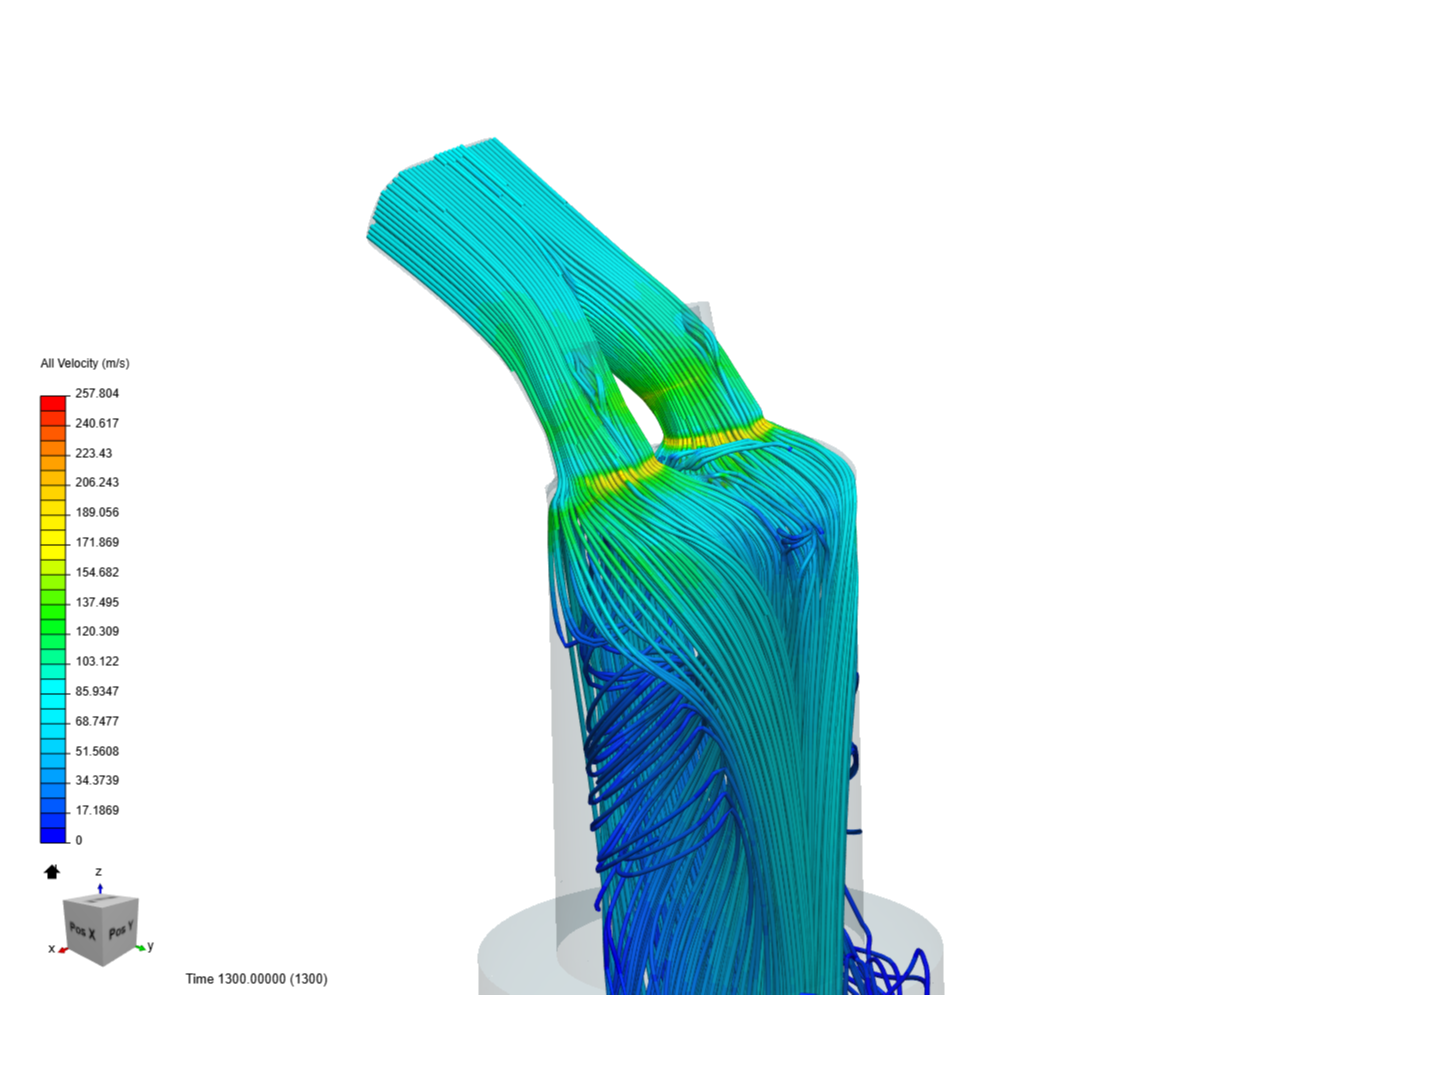 Engine simulation image